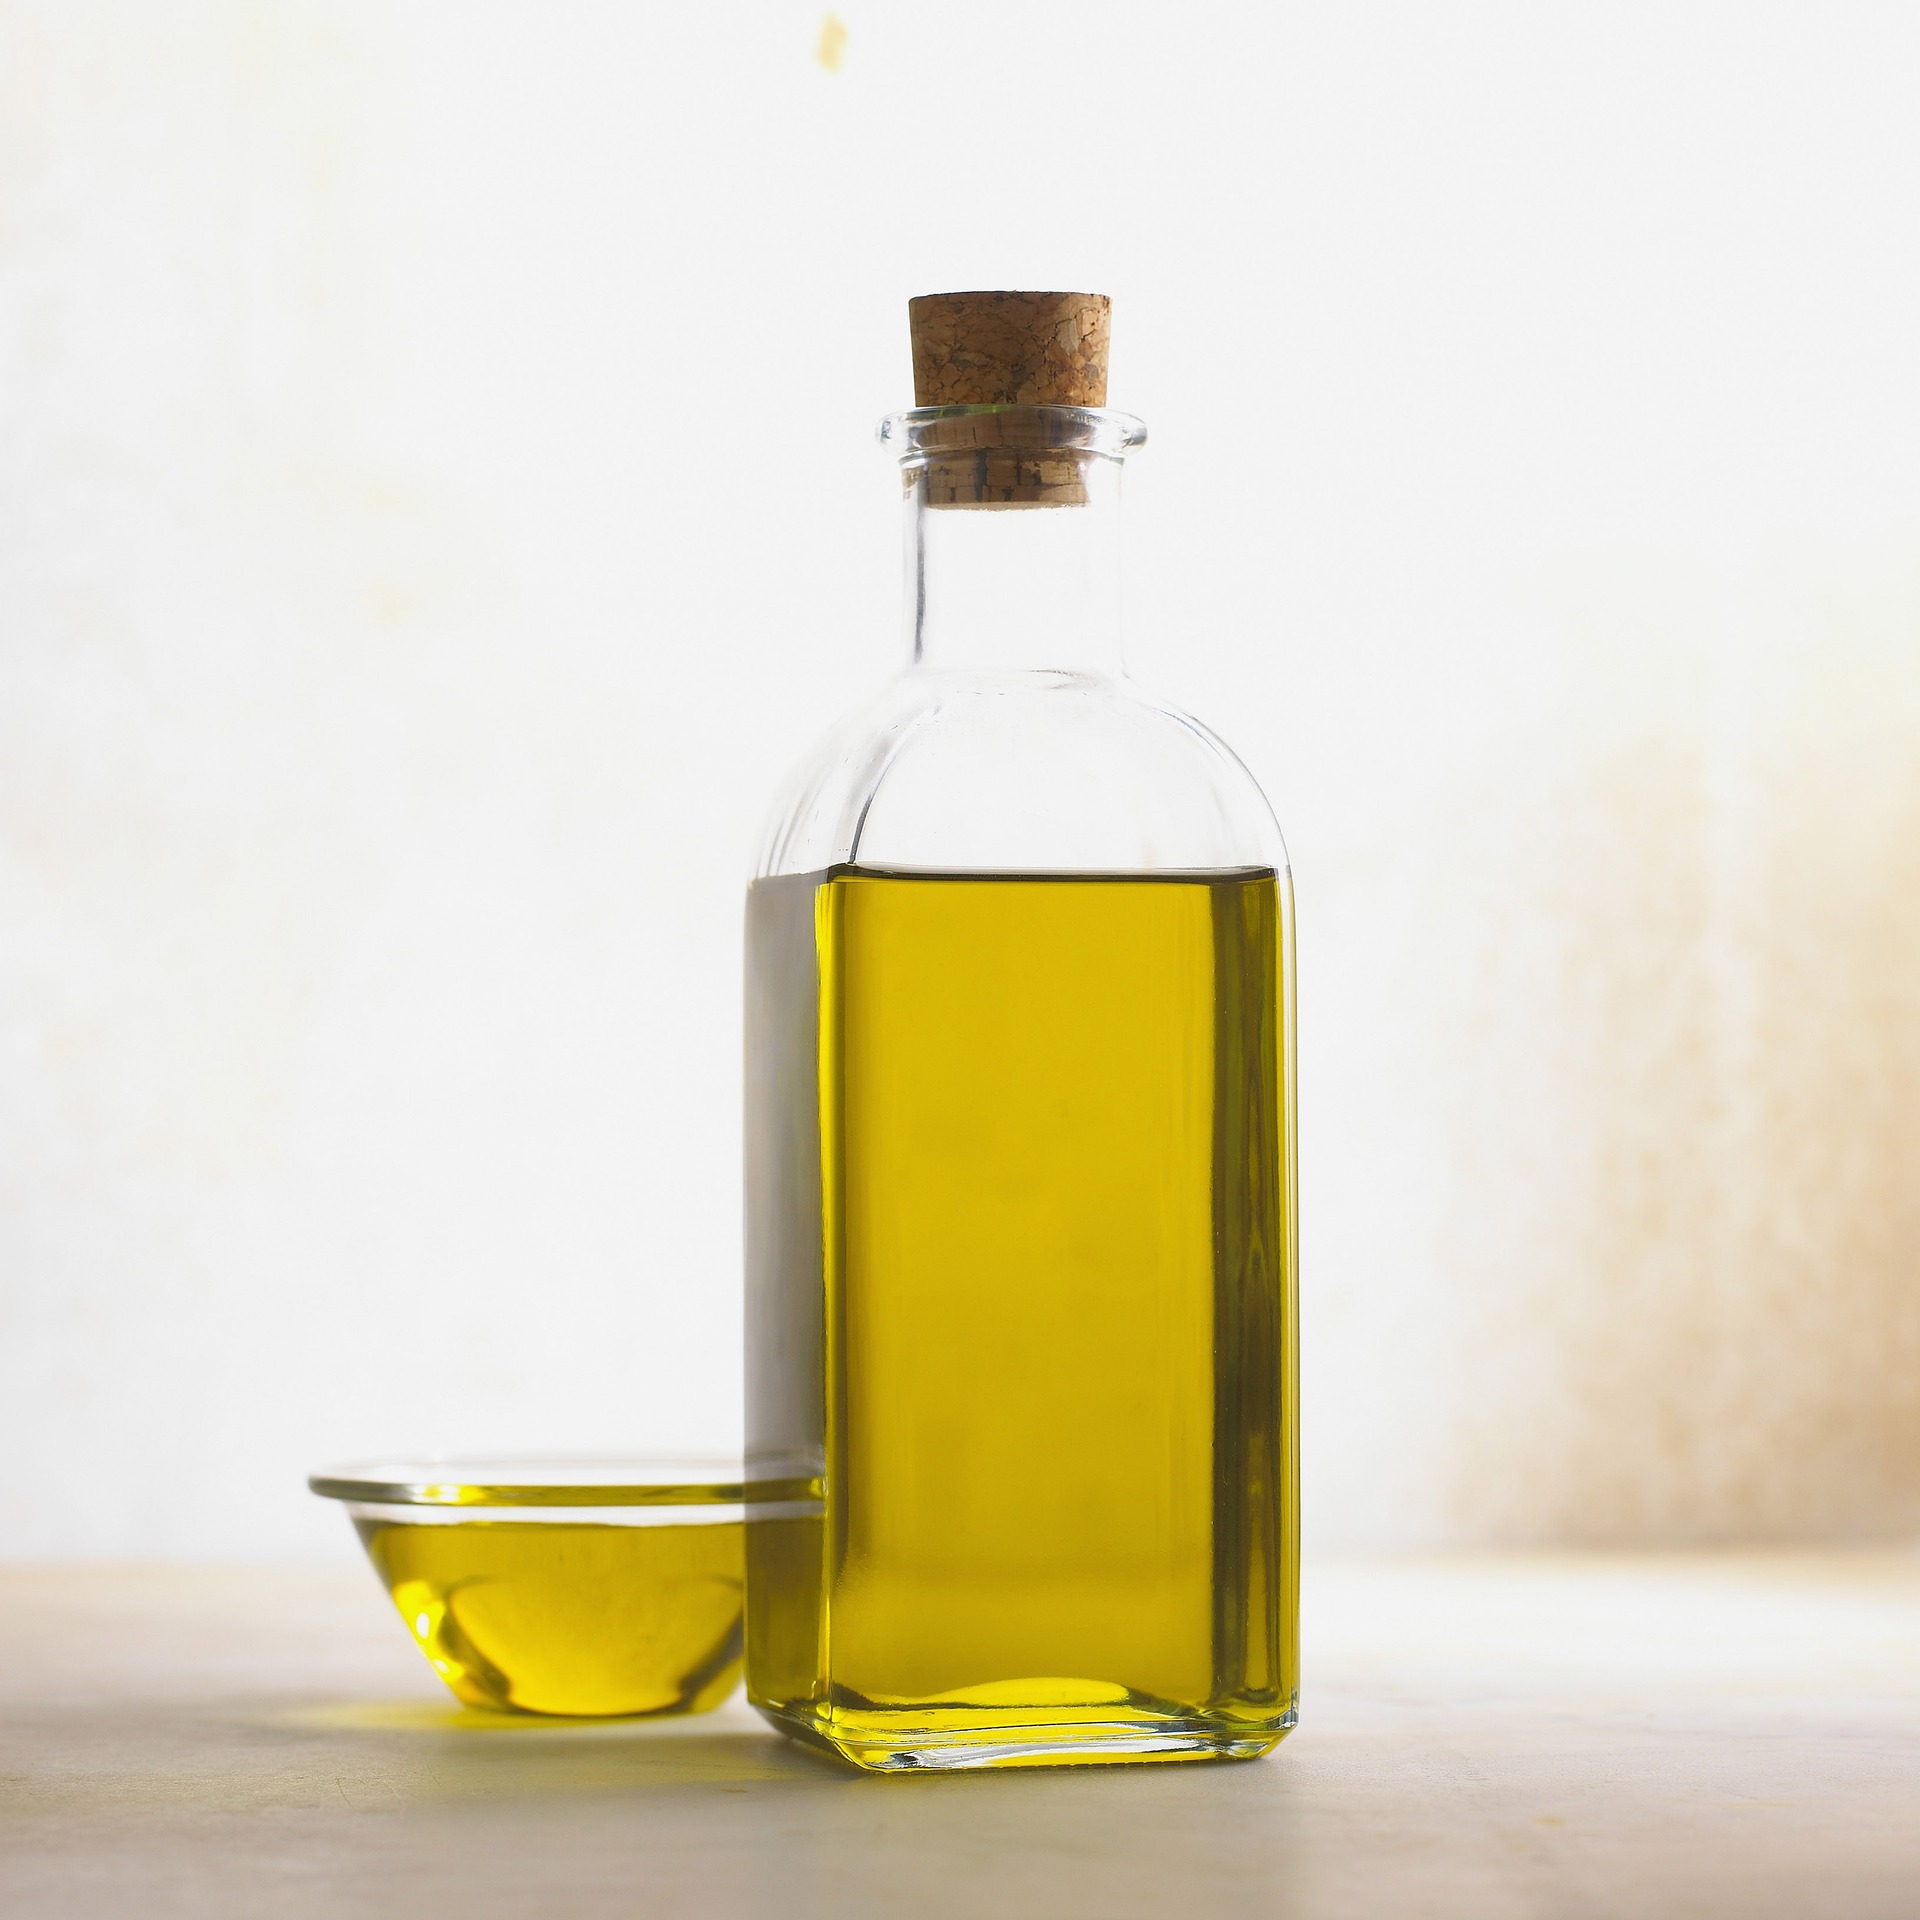 olio extra vergine di oliva